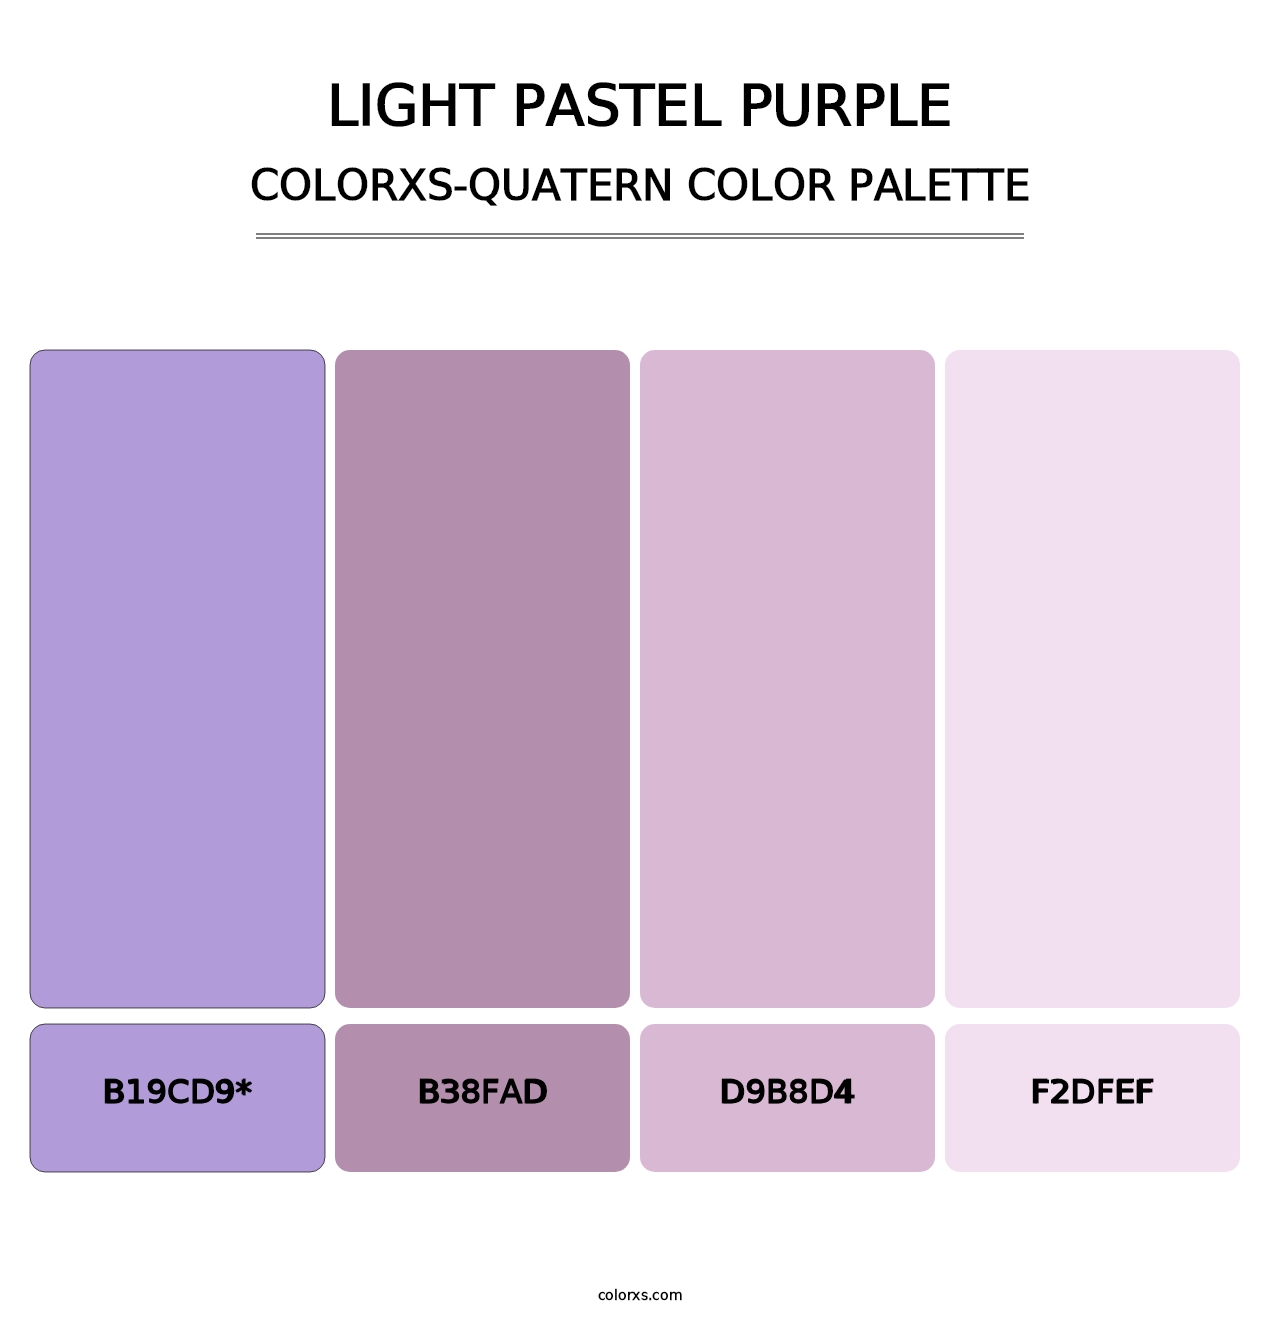 Light Pastel Purple - Colorxs Quatern Palette